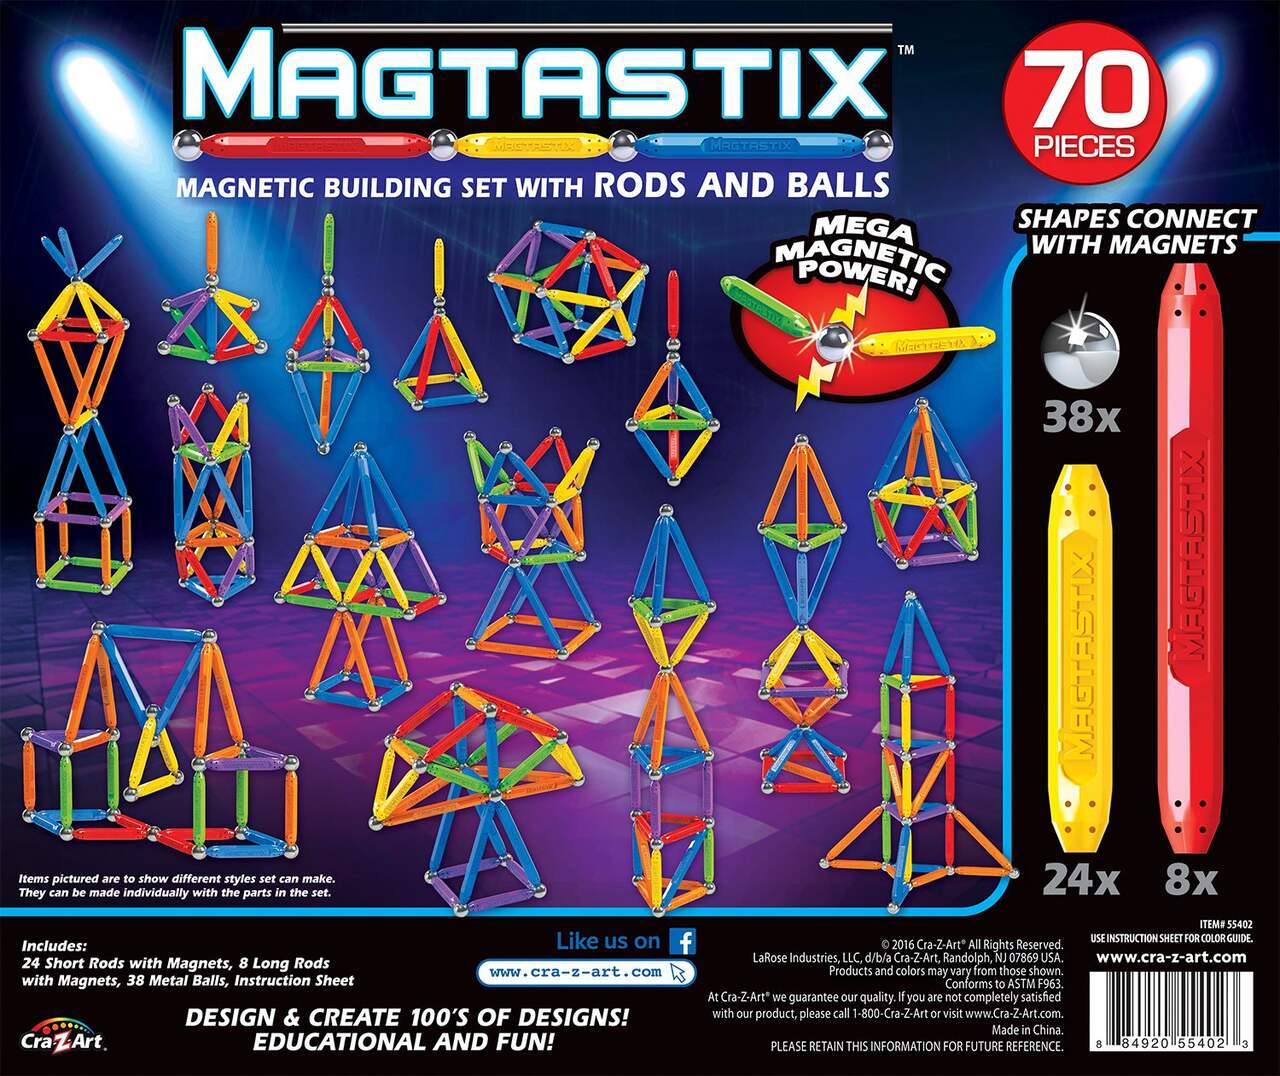 Jeu de construction magnétique Cra-Z-Art Magtastix, paq. 70, 6 ans